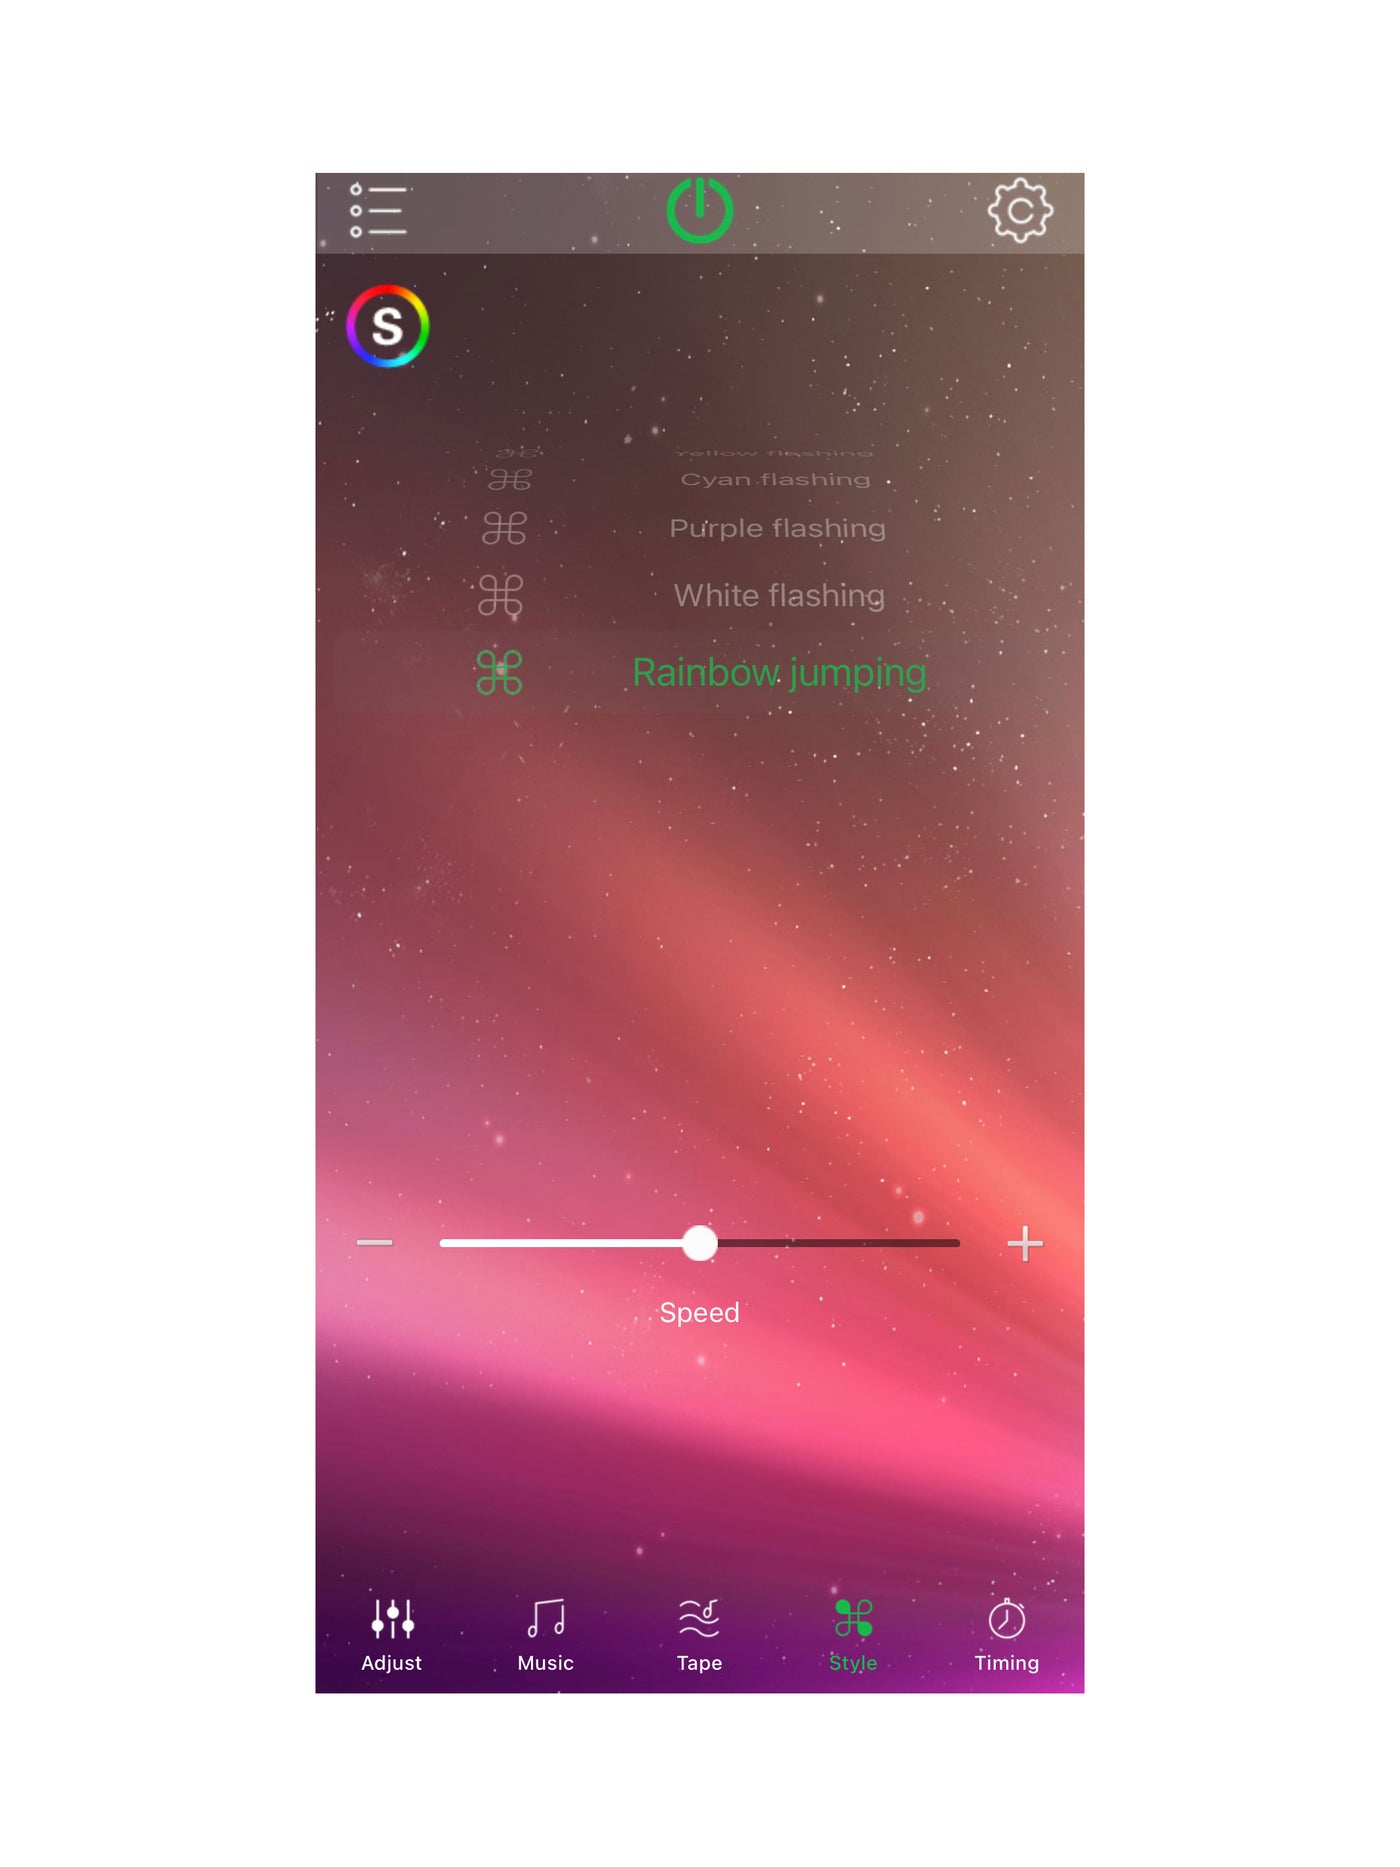 Color Changing Rock Lights App - North Lights